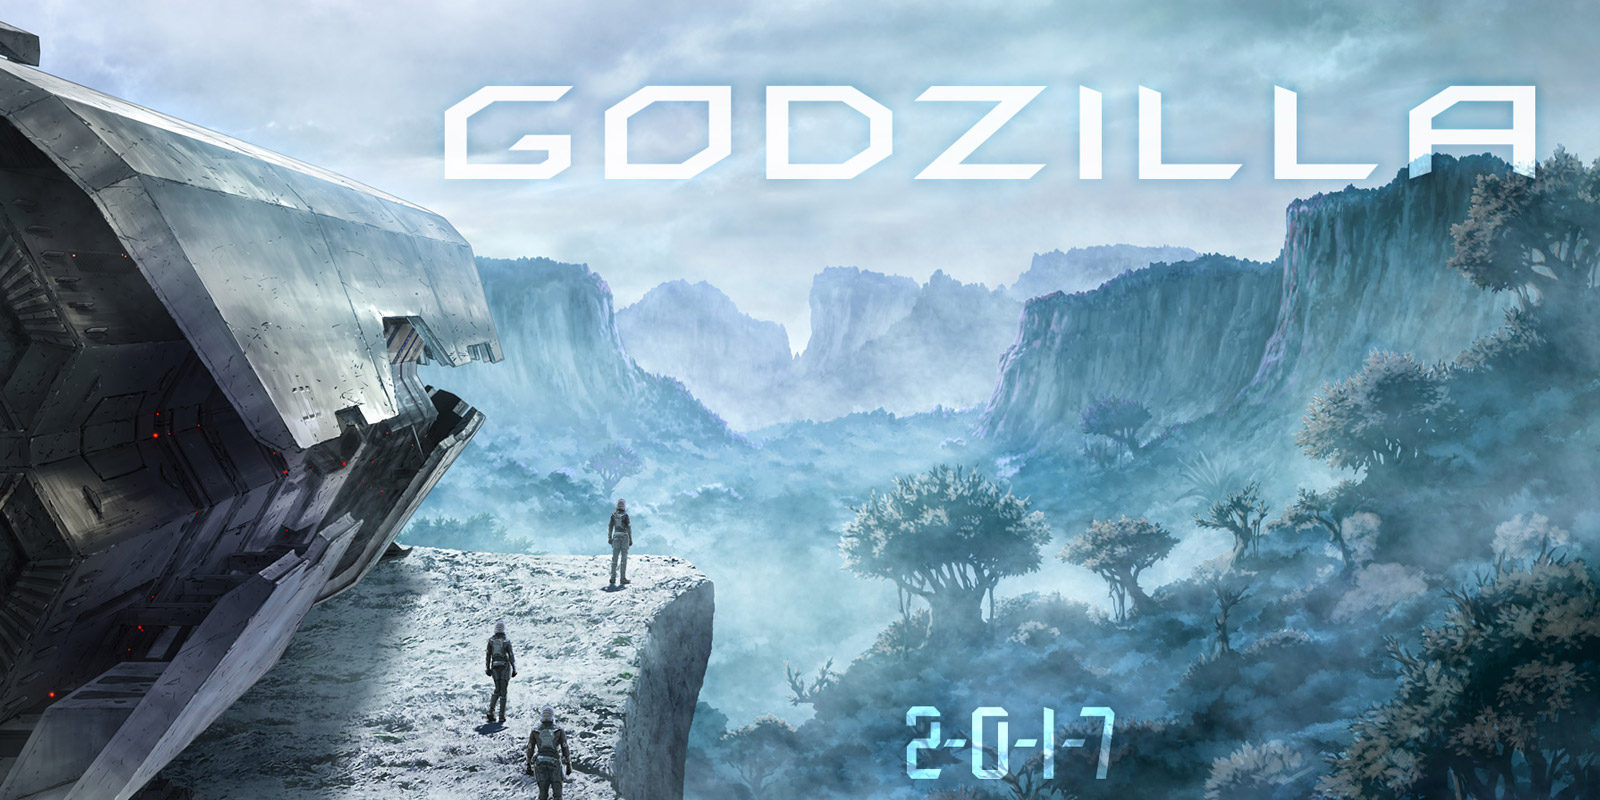 El anime 'Godzilla' de Netflix y Gen Urobuchi en una nueva ilustración